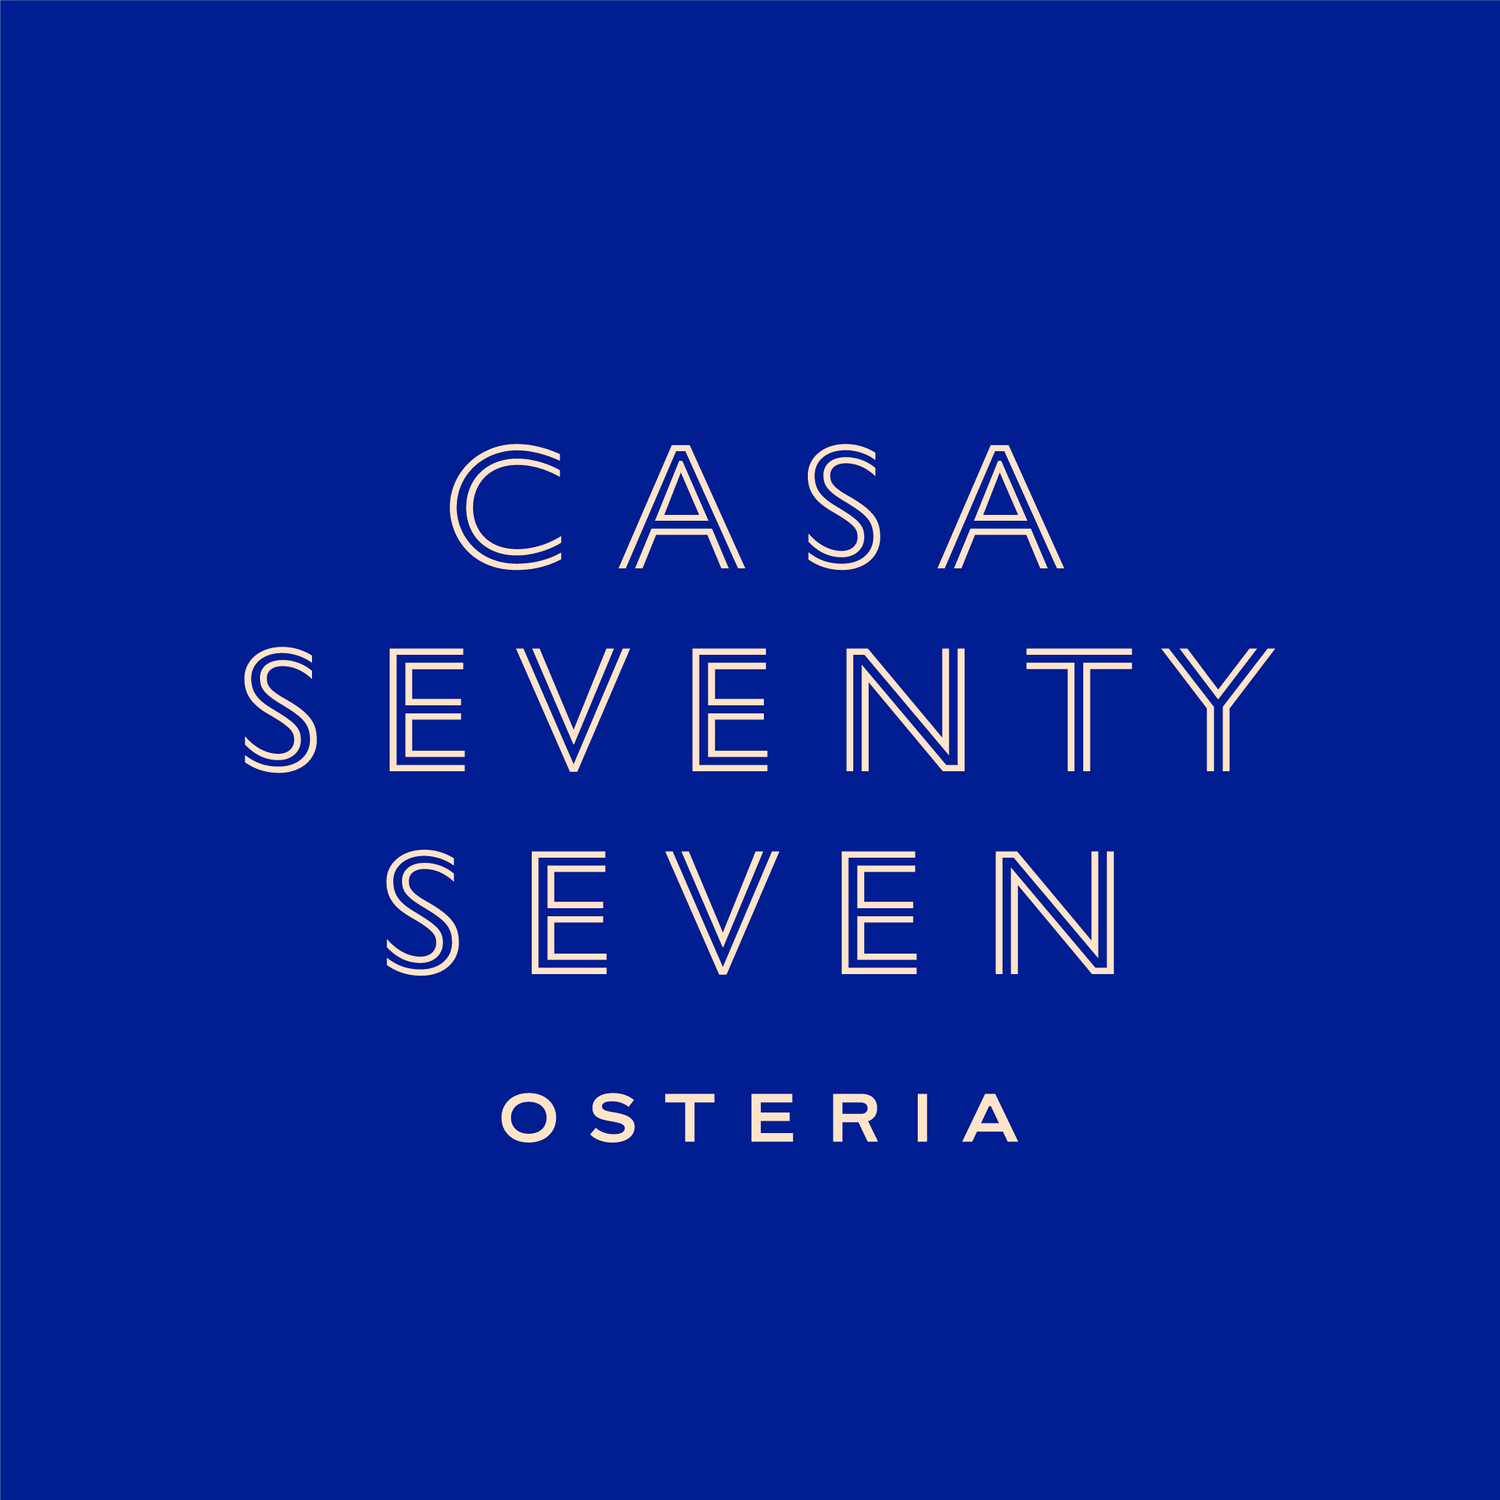 Casa Seventy Seven Osteria &mdash; Cape Porpoise, Kennebunkport 04046 ME